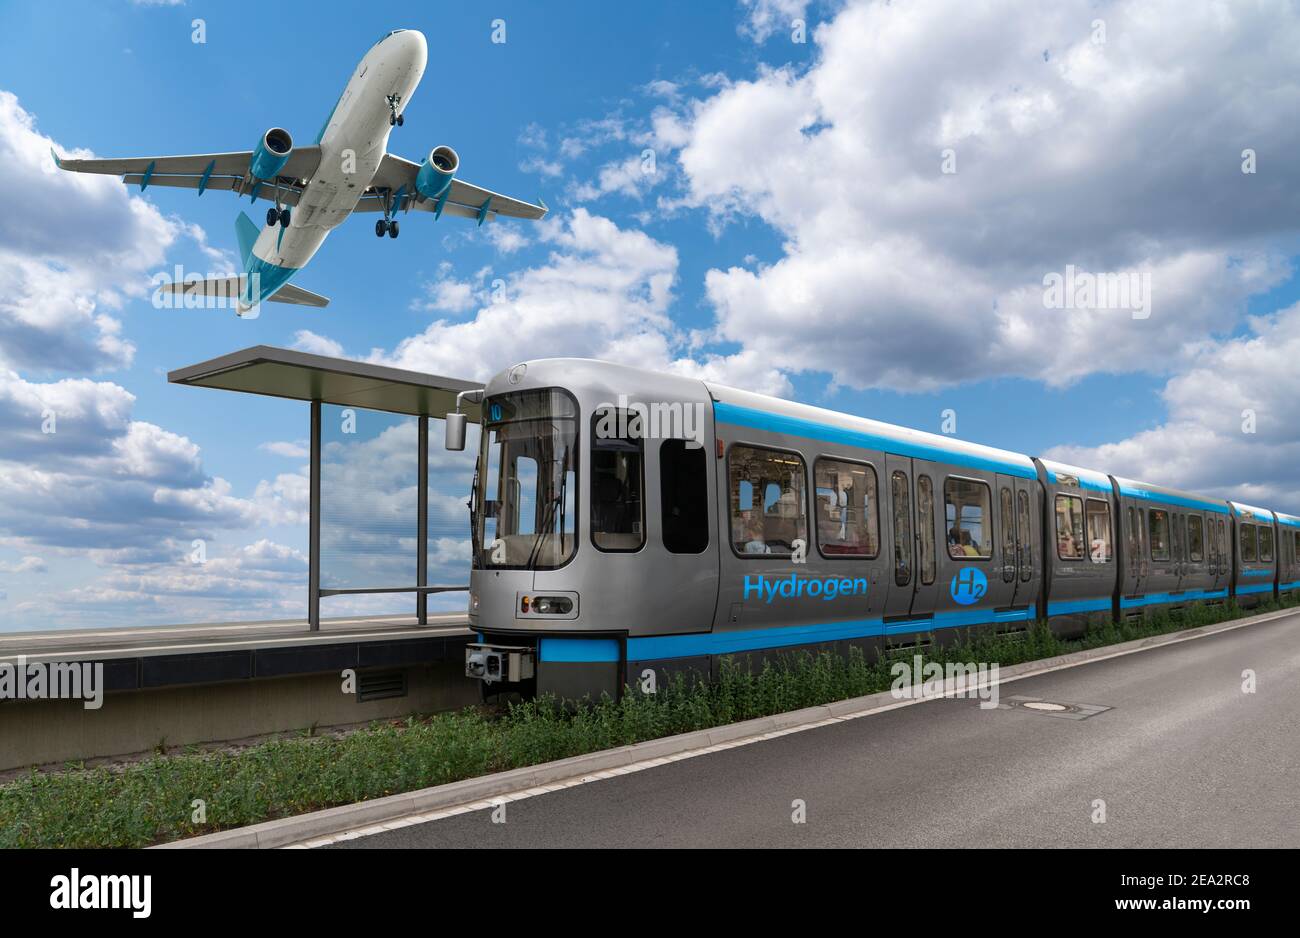 Un train et un avion à pile à hydrogène. Nouvelles sources d'énergie Banque D'Images